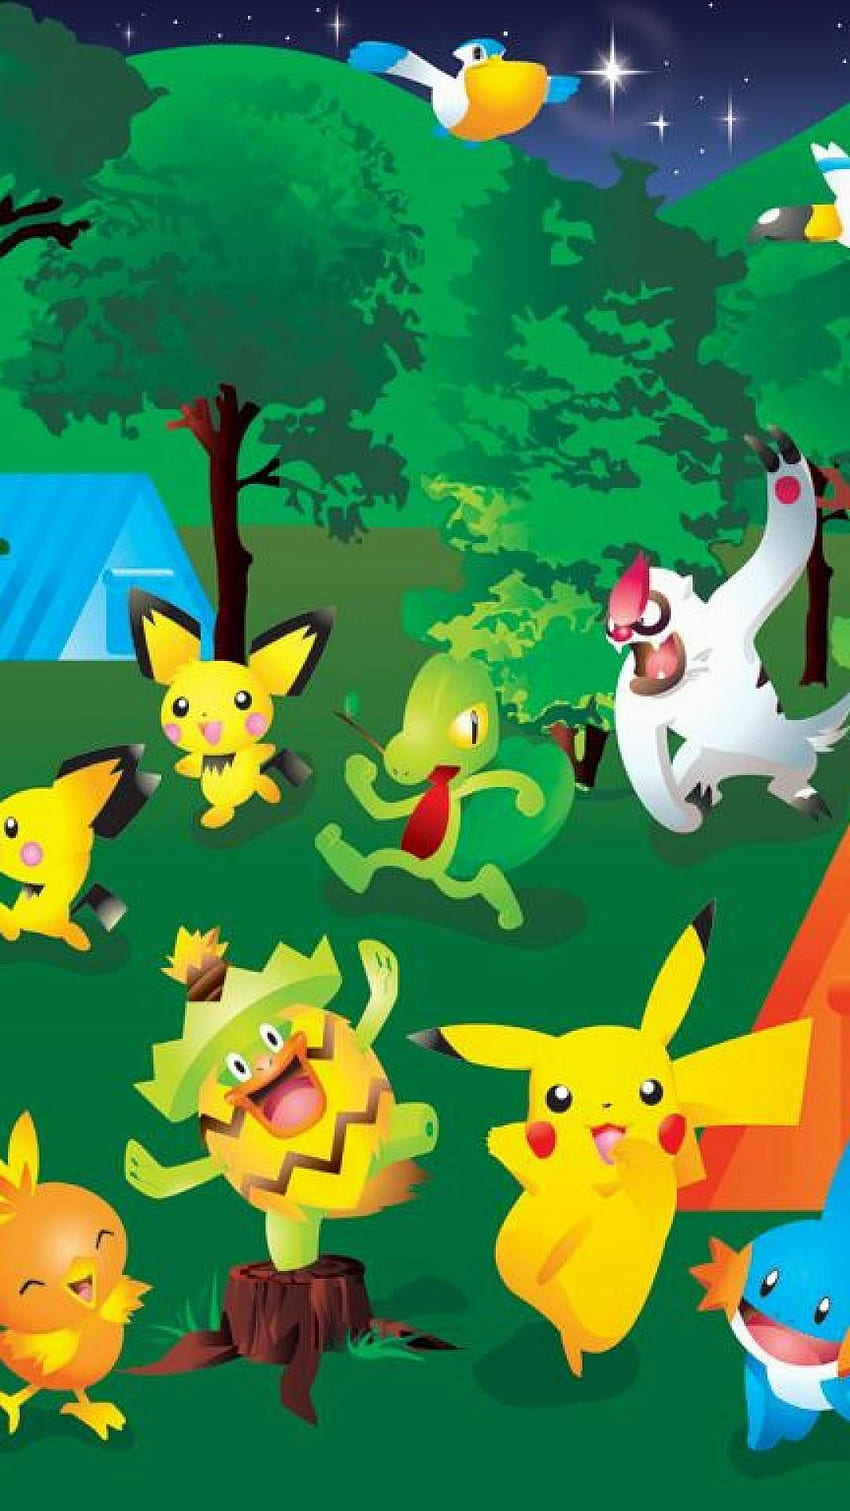 Pokemon: Điểm hẹn của những người yêu thích thế giới Pokemon, những sinh vật kỳ lạ và đầy bí ẩn sẽ cùng bạn khám phá thế giới đầy màu sắc và phiêu lưu. Hãy đến và tìm hiểu thêm về thế giới Pokemon tuyệt vời này.